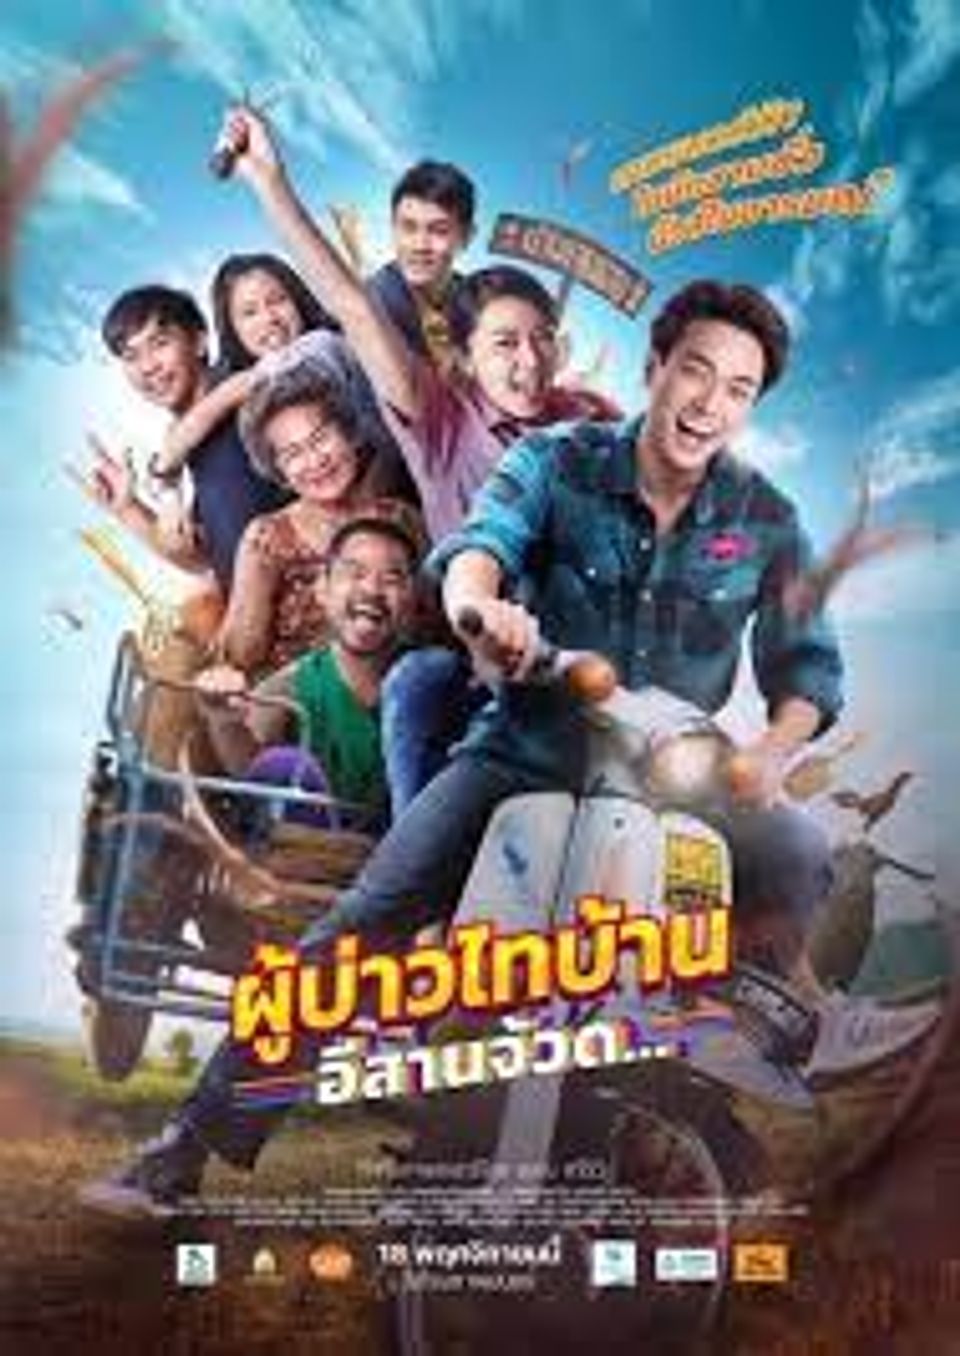 ภาพยนตร์ไทย “ผู้บ้านไทบ้าน อีสานจ้วด”  (PHU BAO THAI BAHN E-SAAN JUAD)